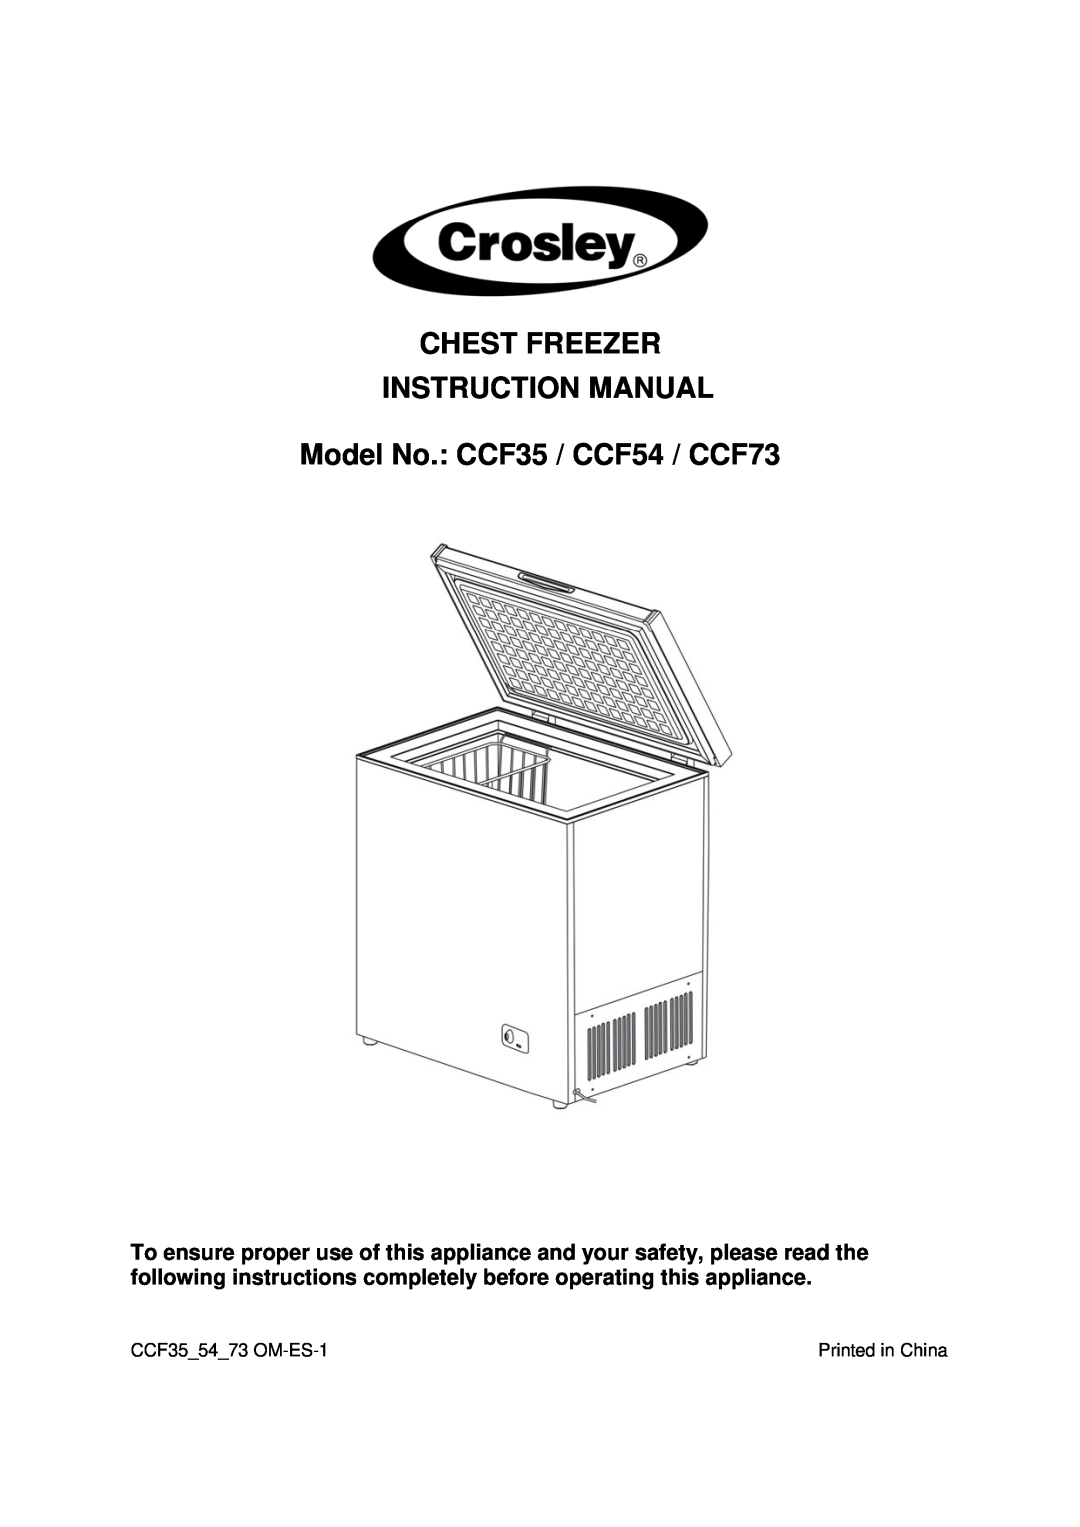 Crosley instruction manual Model No. CCF35 / CCF54 / CCF73, CCF35 54 73 OM-ES-1 